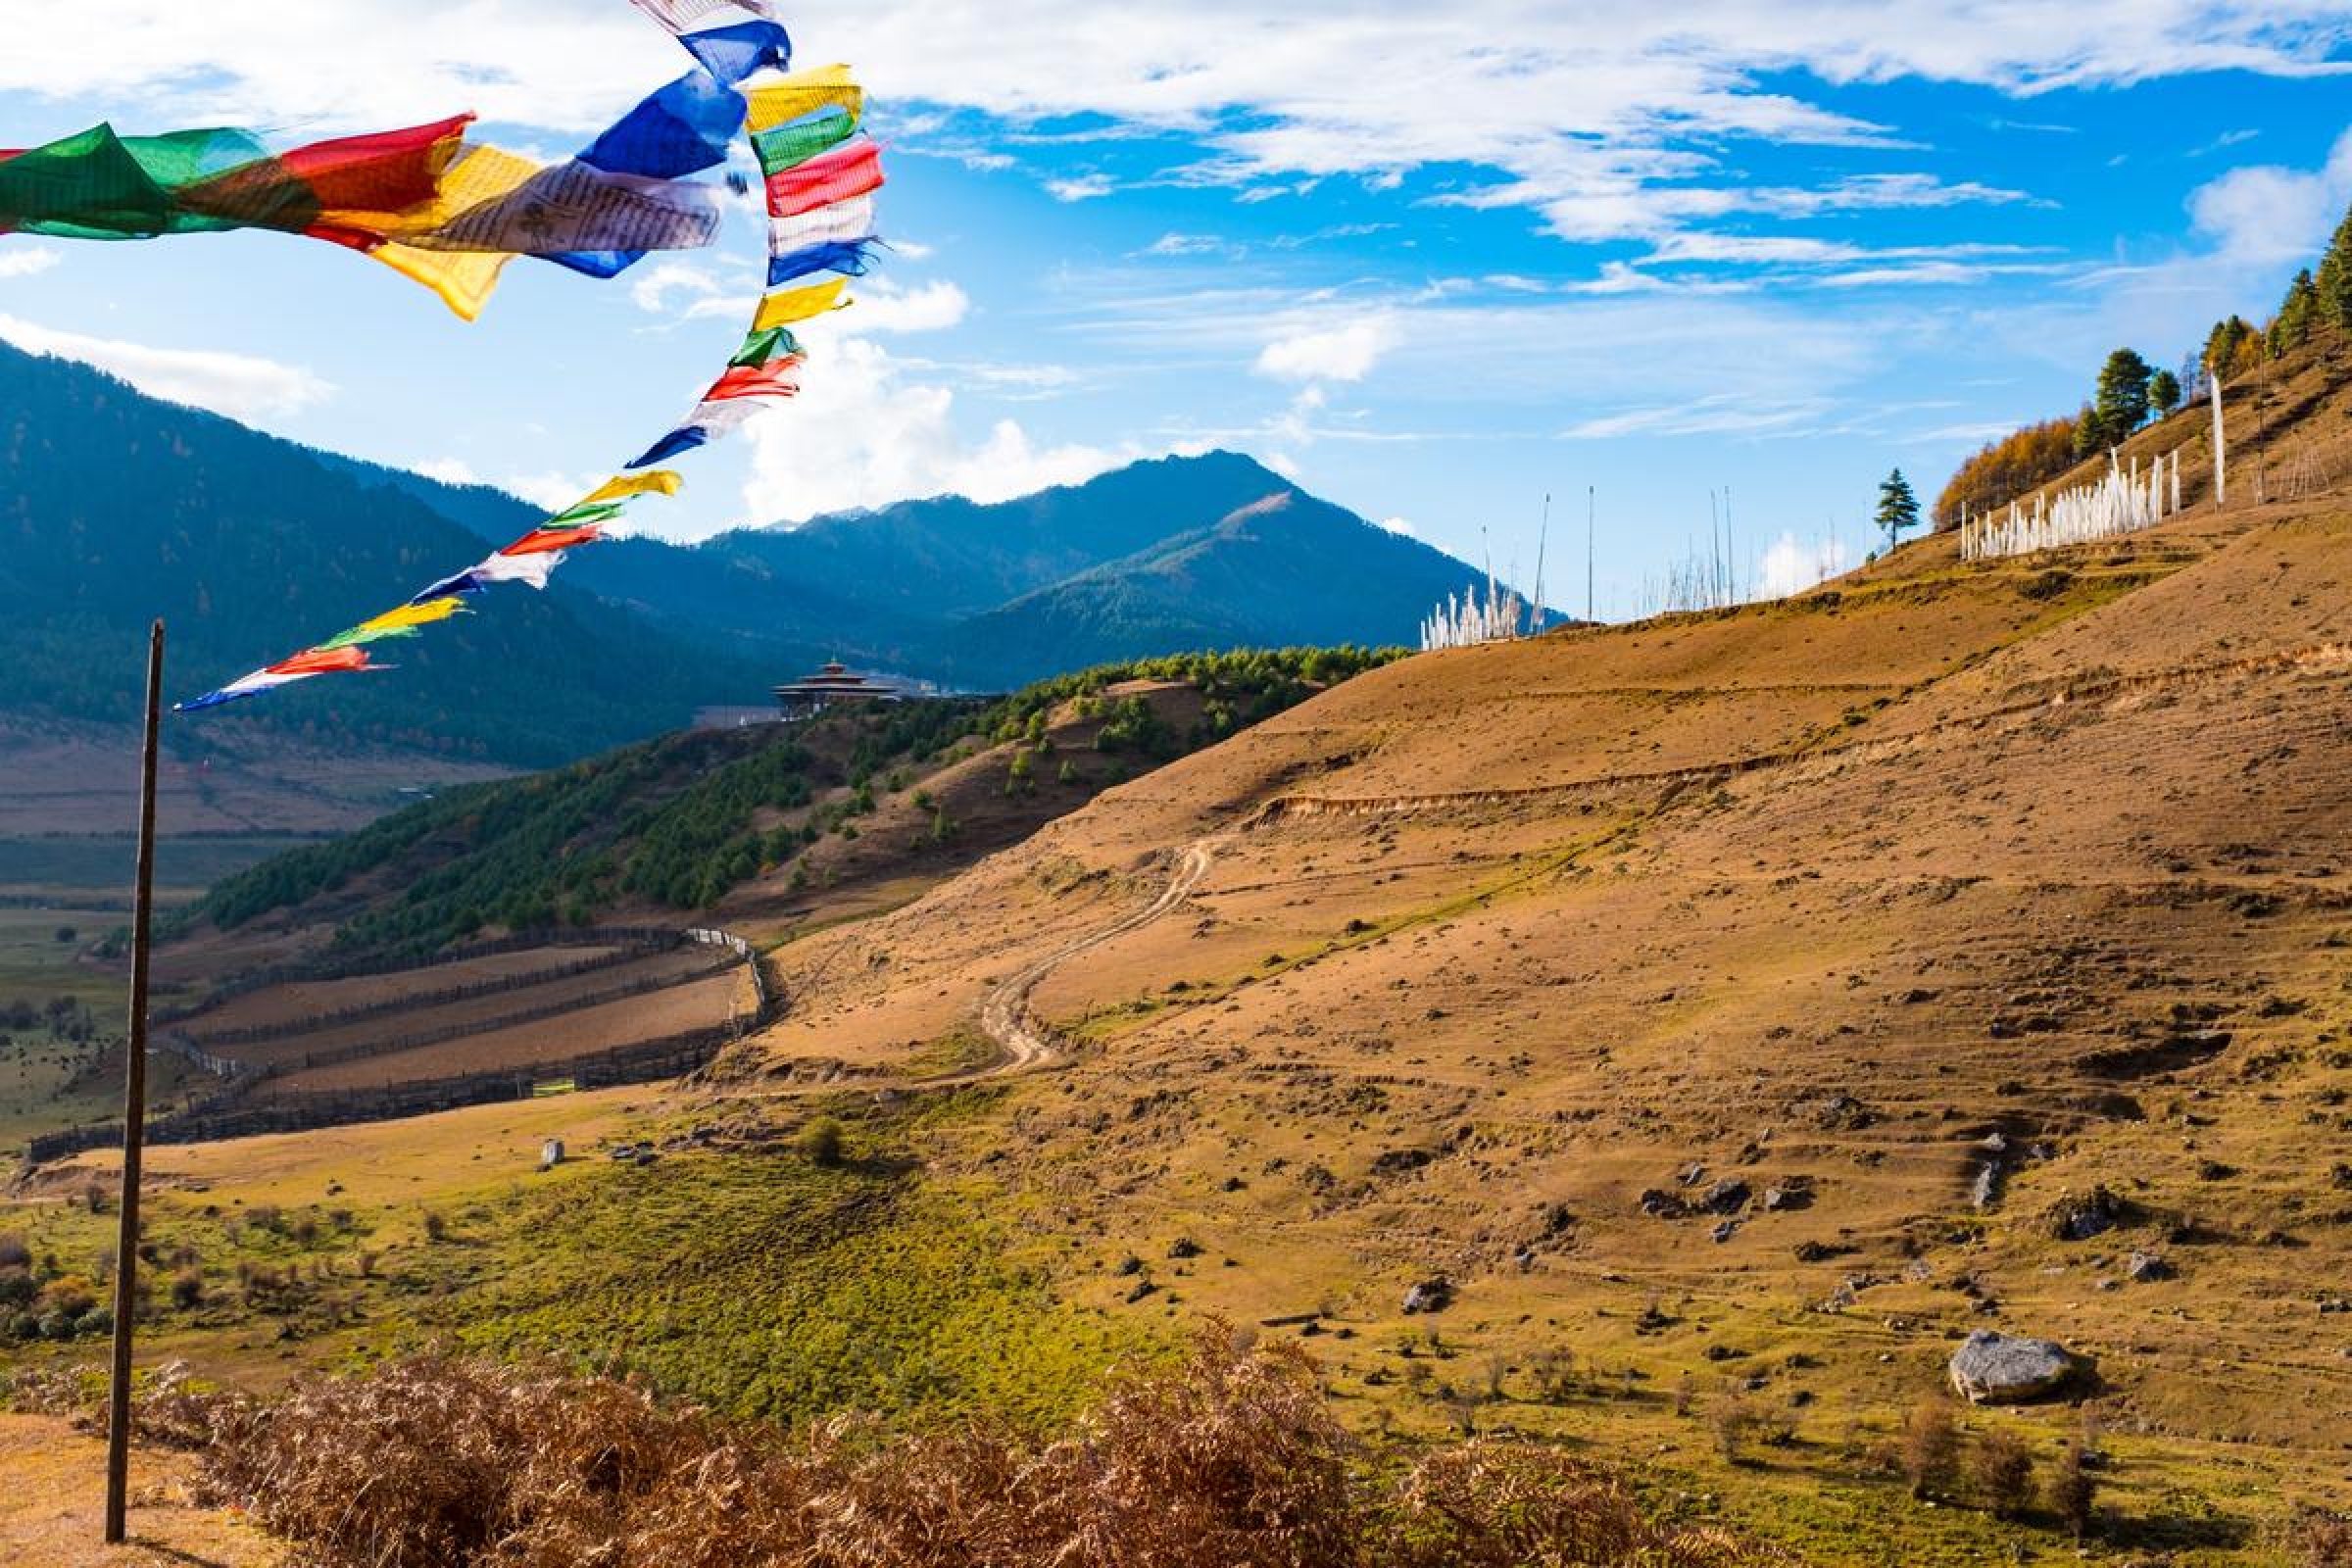 Bhutan's cultural treasures